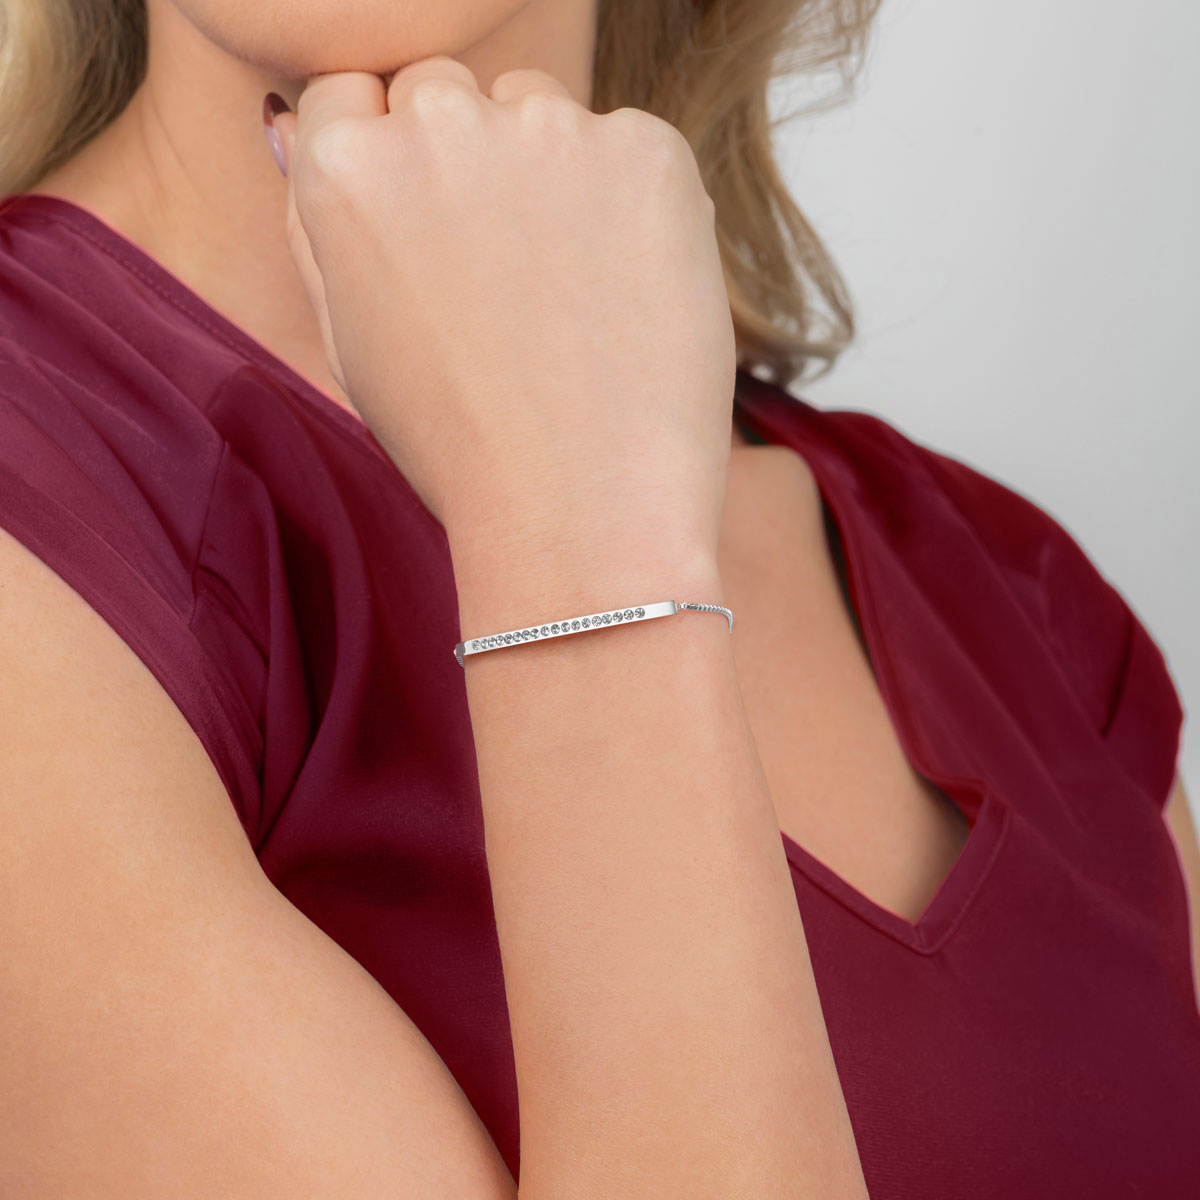 Woman wearing an Arvo Clear Gem Bracelet - Stainless